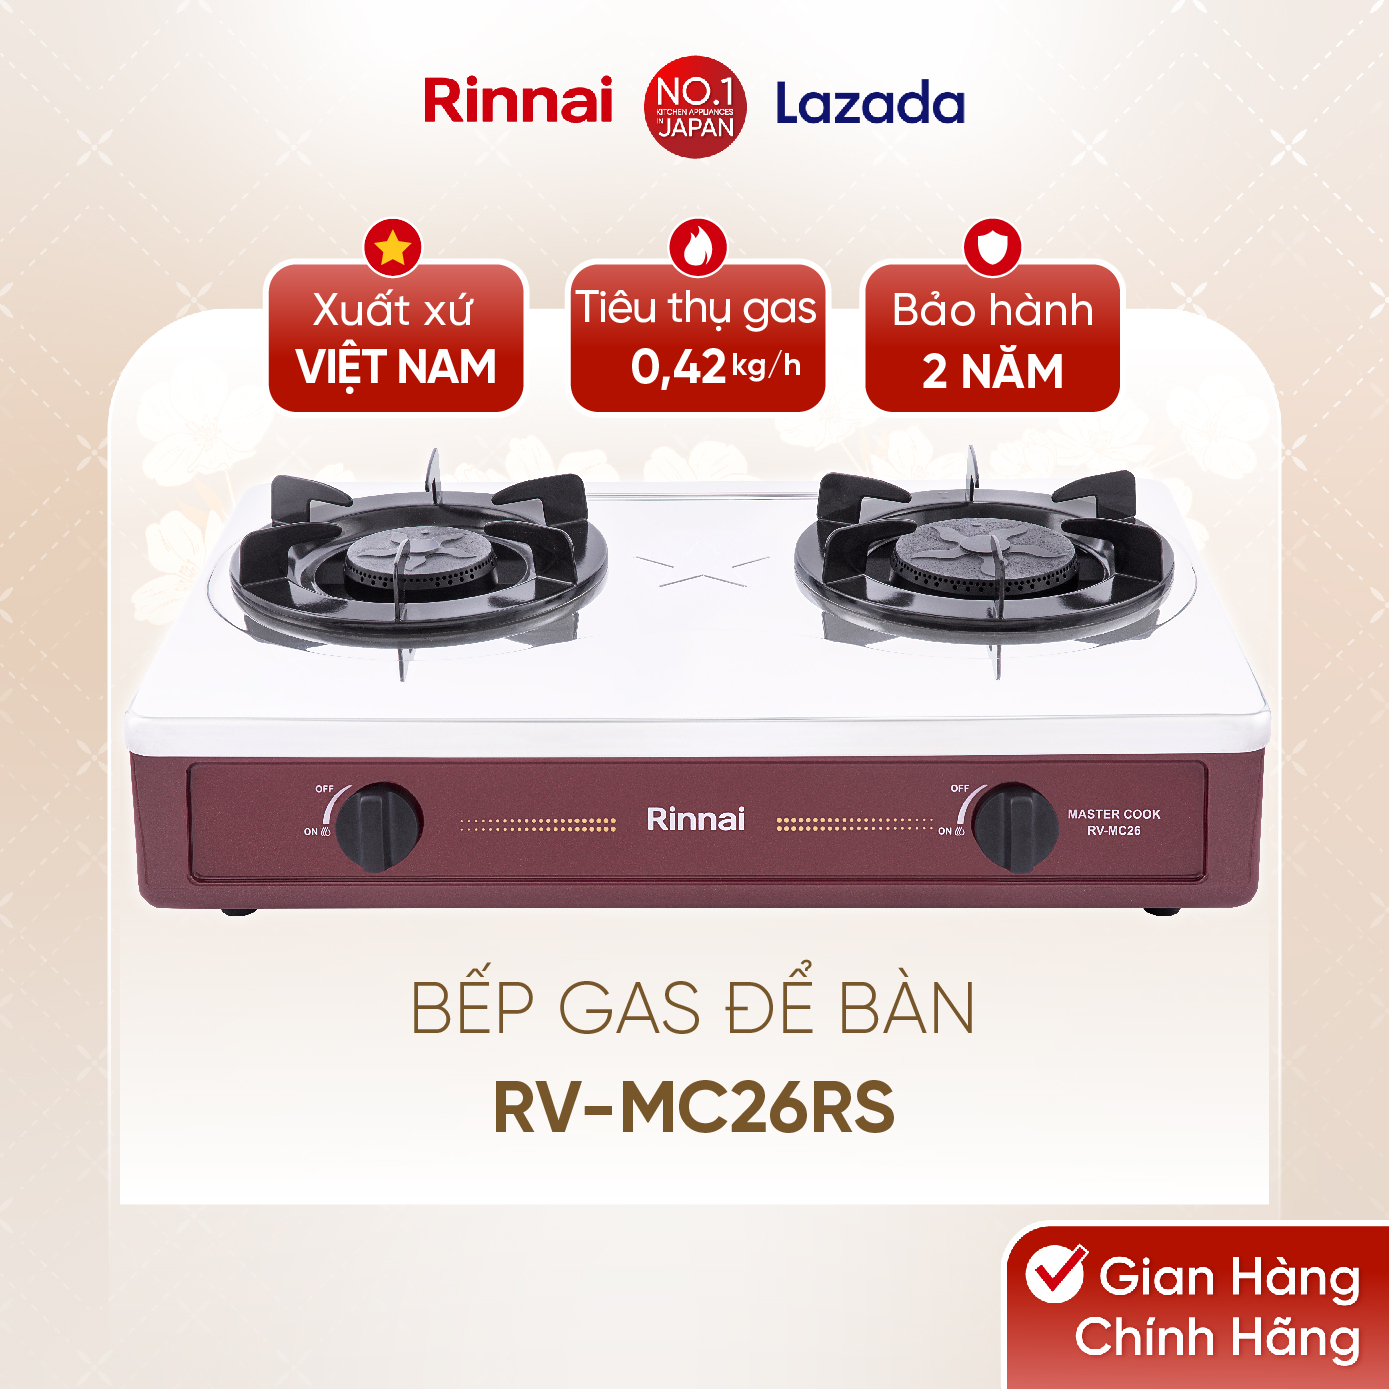 Bếp gas dương Rinnai RV-MC26RS mặt bếp inox và kiềng bếp men - Hàng chính hãng.